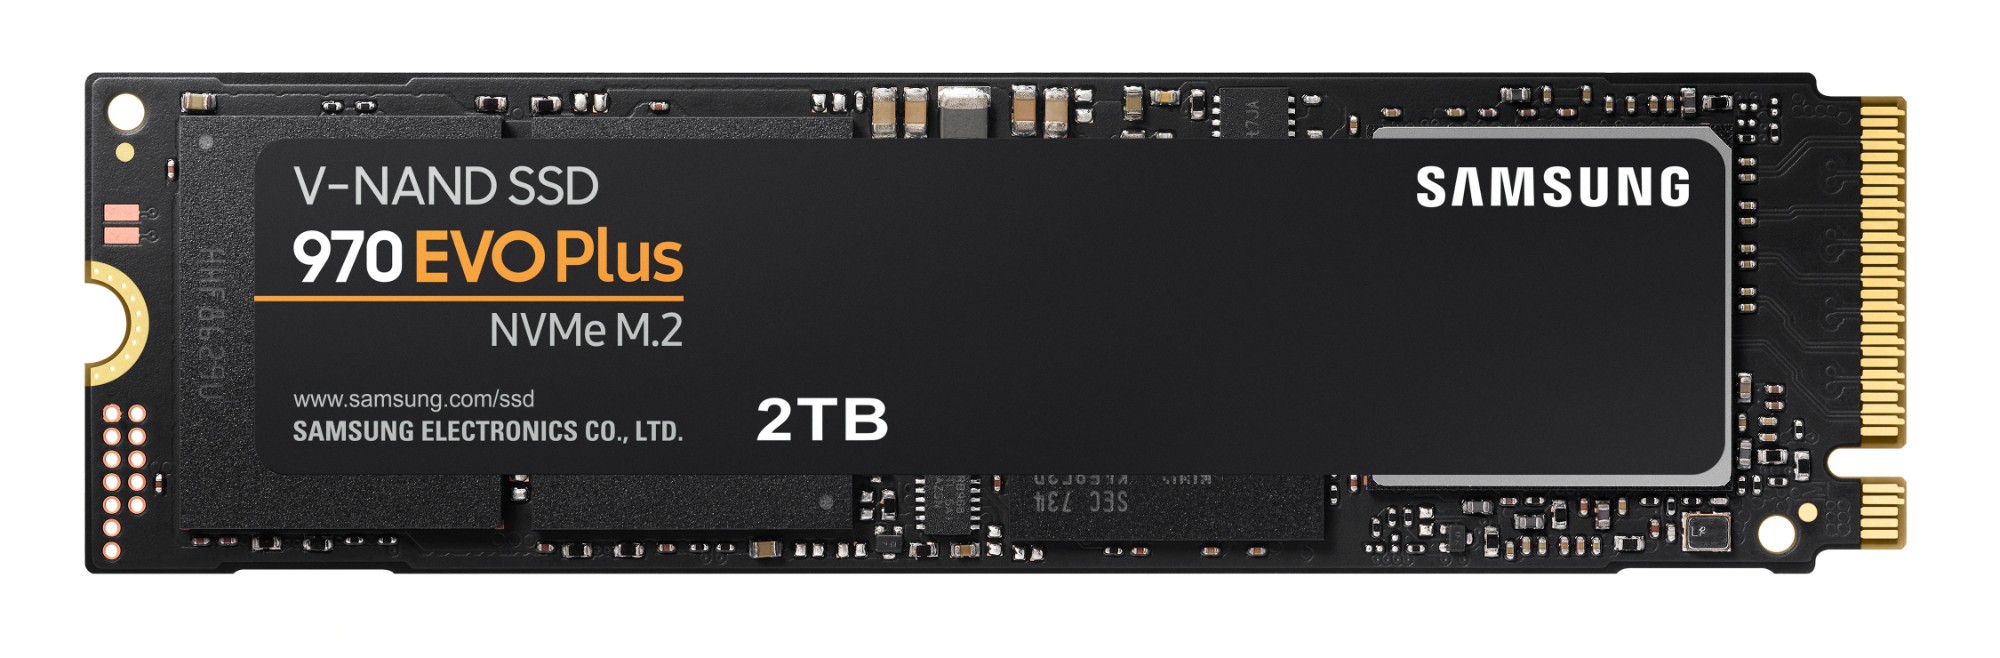 Samsung 970 EVO Plus M.2 GB PCI 3.0 V-NAND